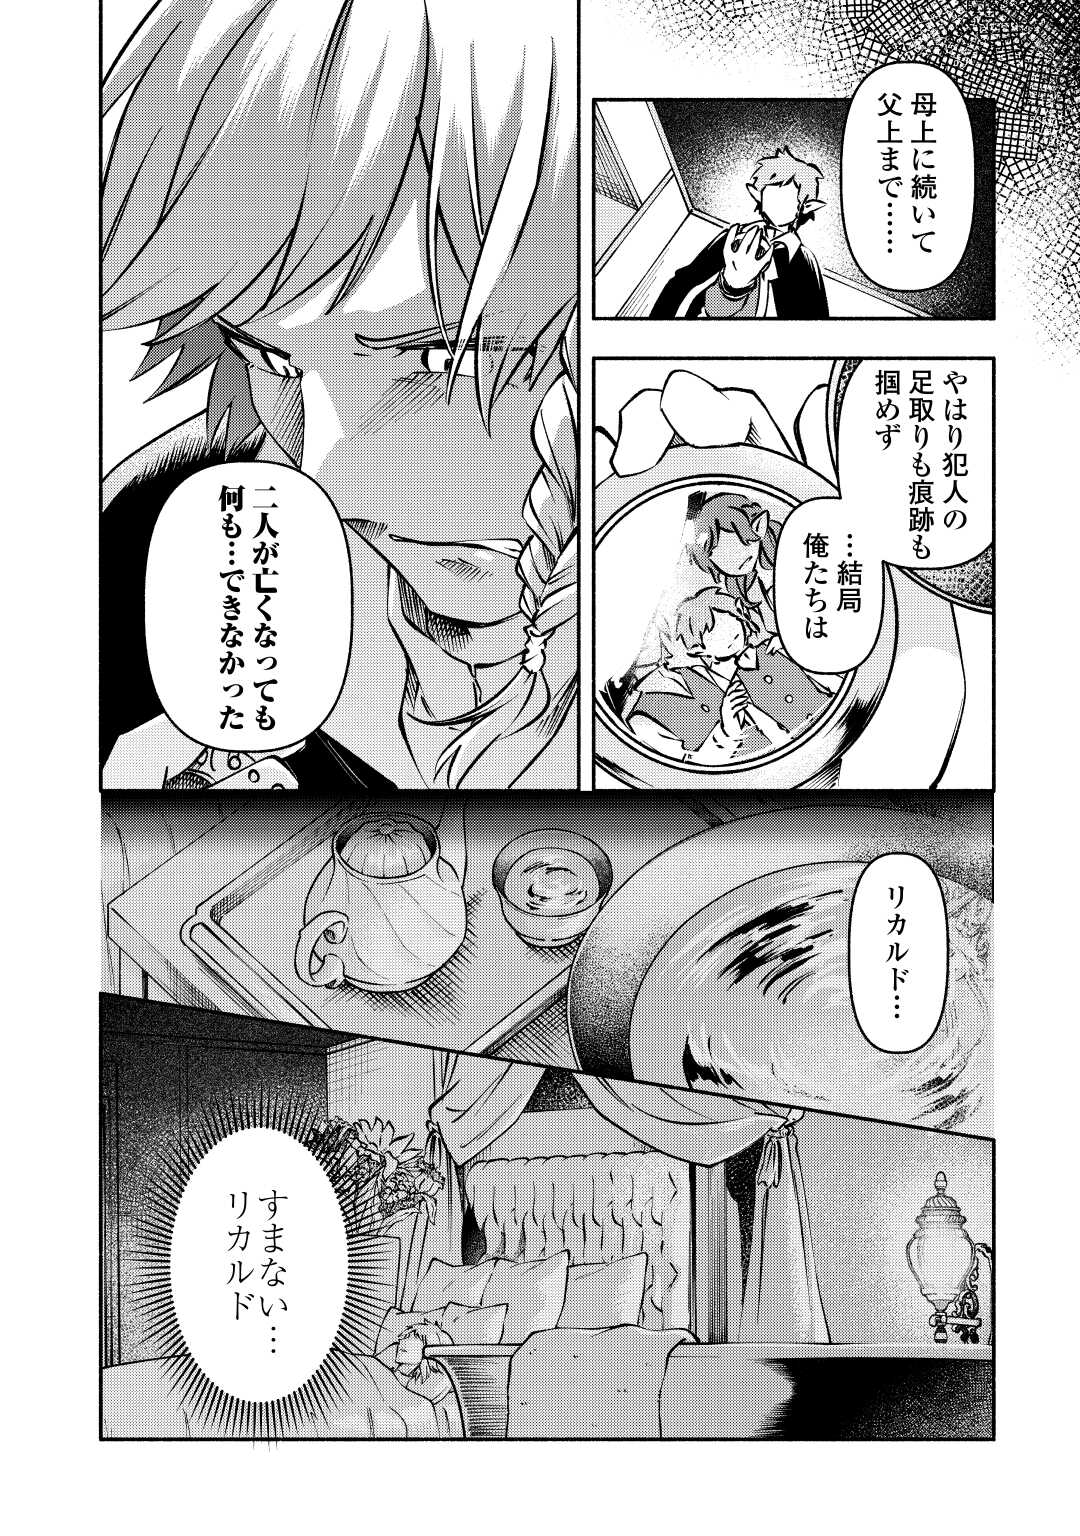 Osanago wa Saikyou no Tamer da to Kizuiteimasen! - Chapter 11 - Page 14